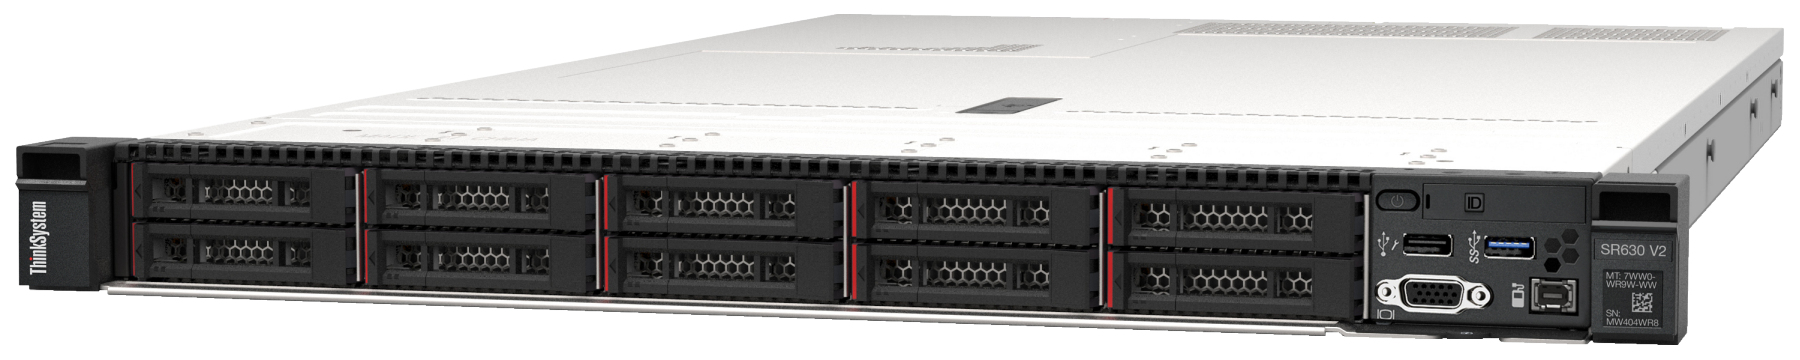 Сервер Lenovo ThinkSystem SR630 V2 (7Z71A054EA). Фиксированная комплектация сервера